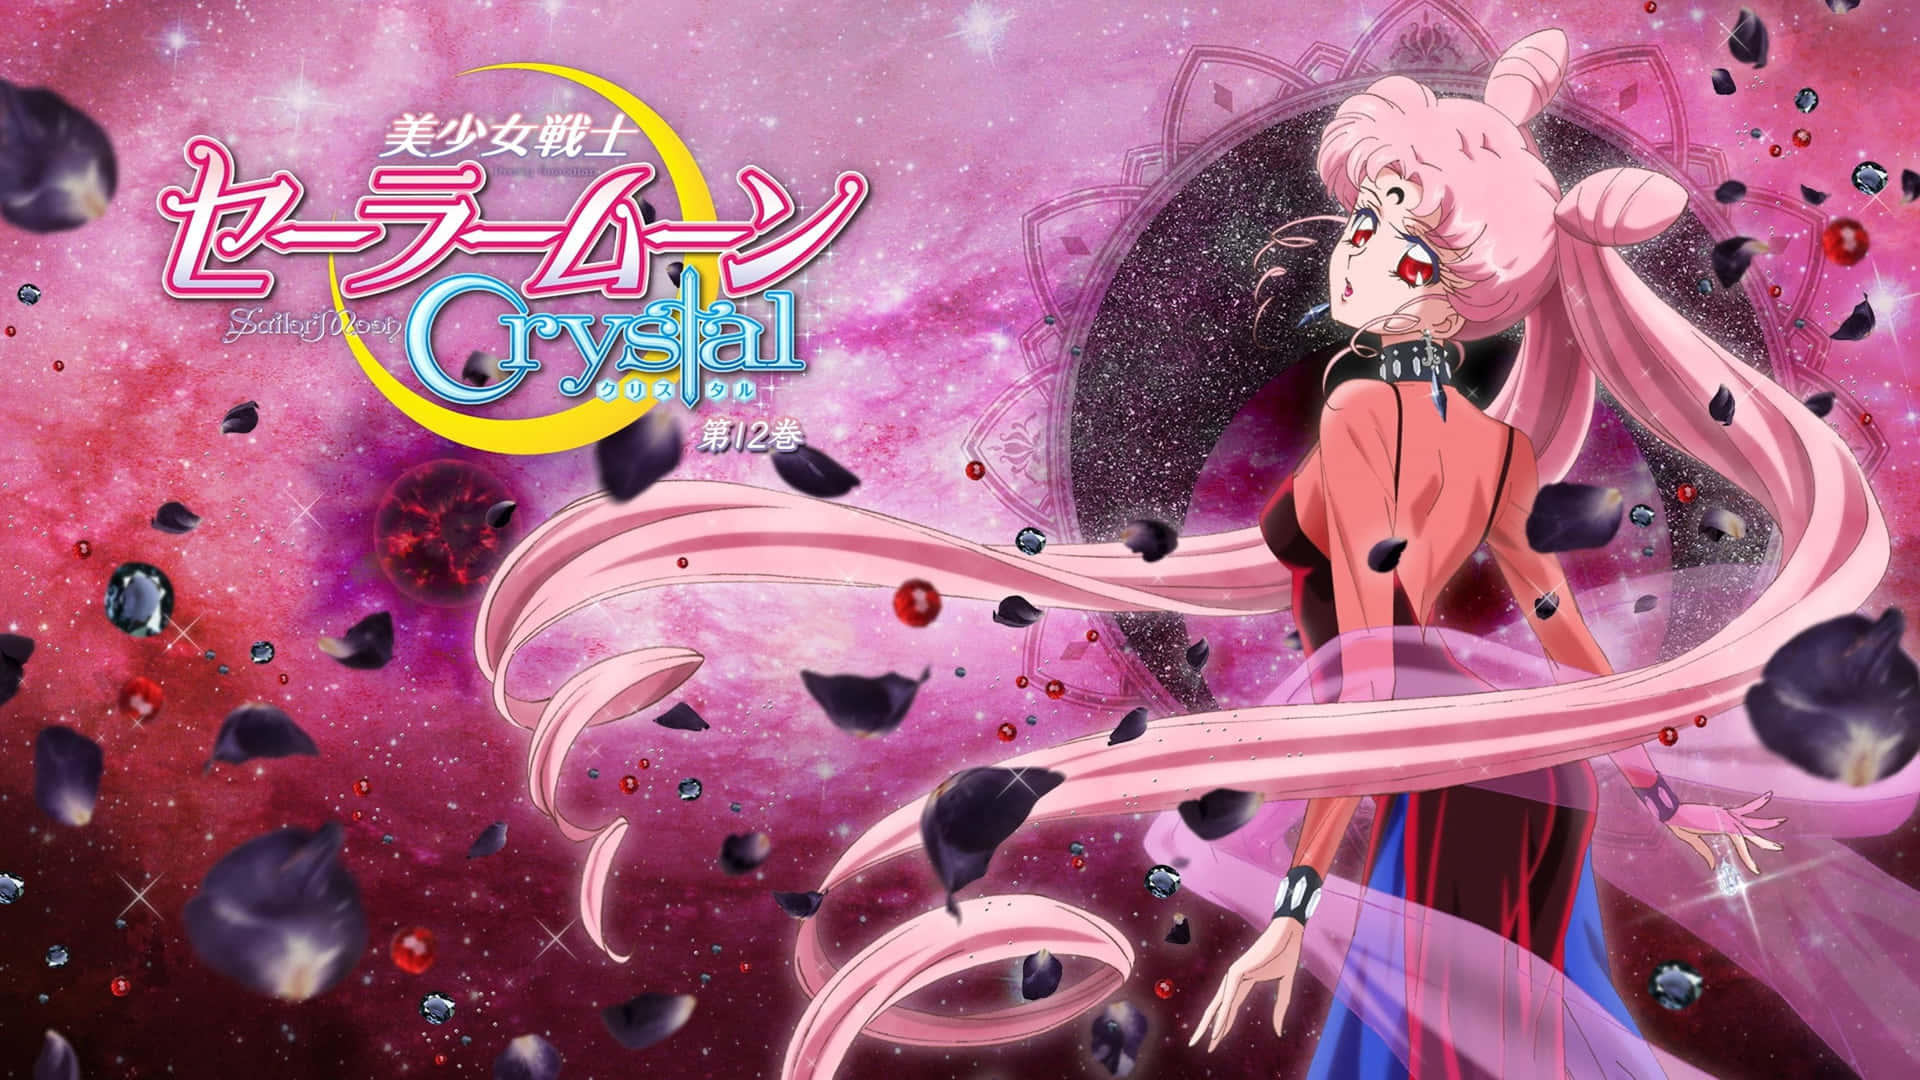 Chibiusa, den elskede datter af Sailor Moon, gør hele tapetet smukt. Wallpaper